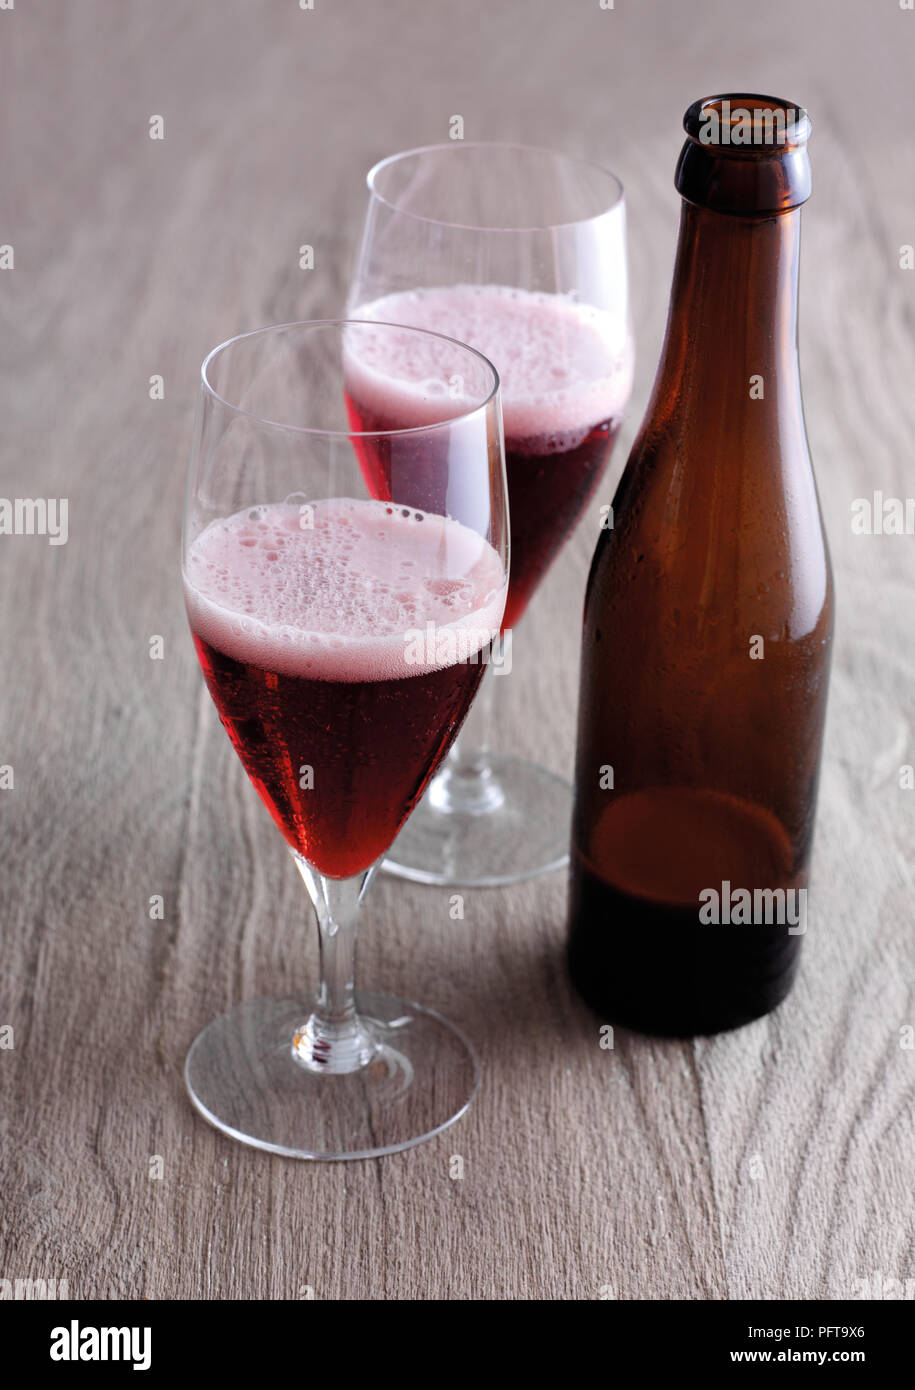 Cherry lambic (Kriek lambic), Belgian cherry beer Stock Photo